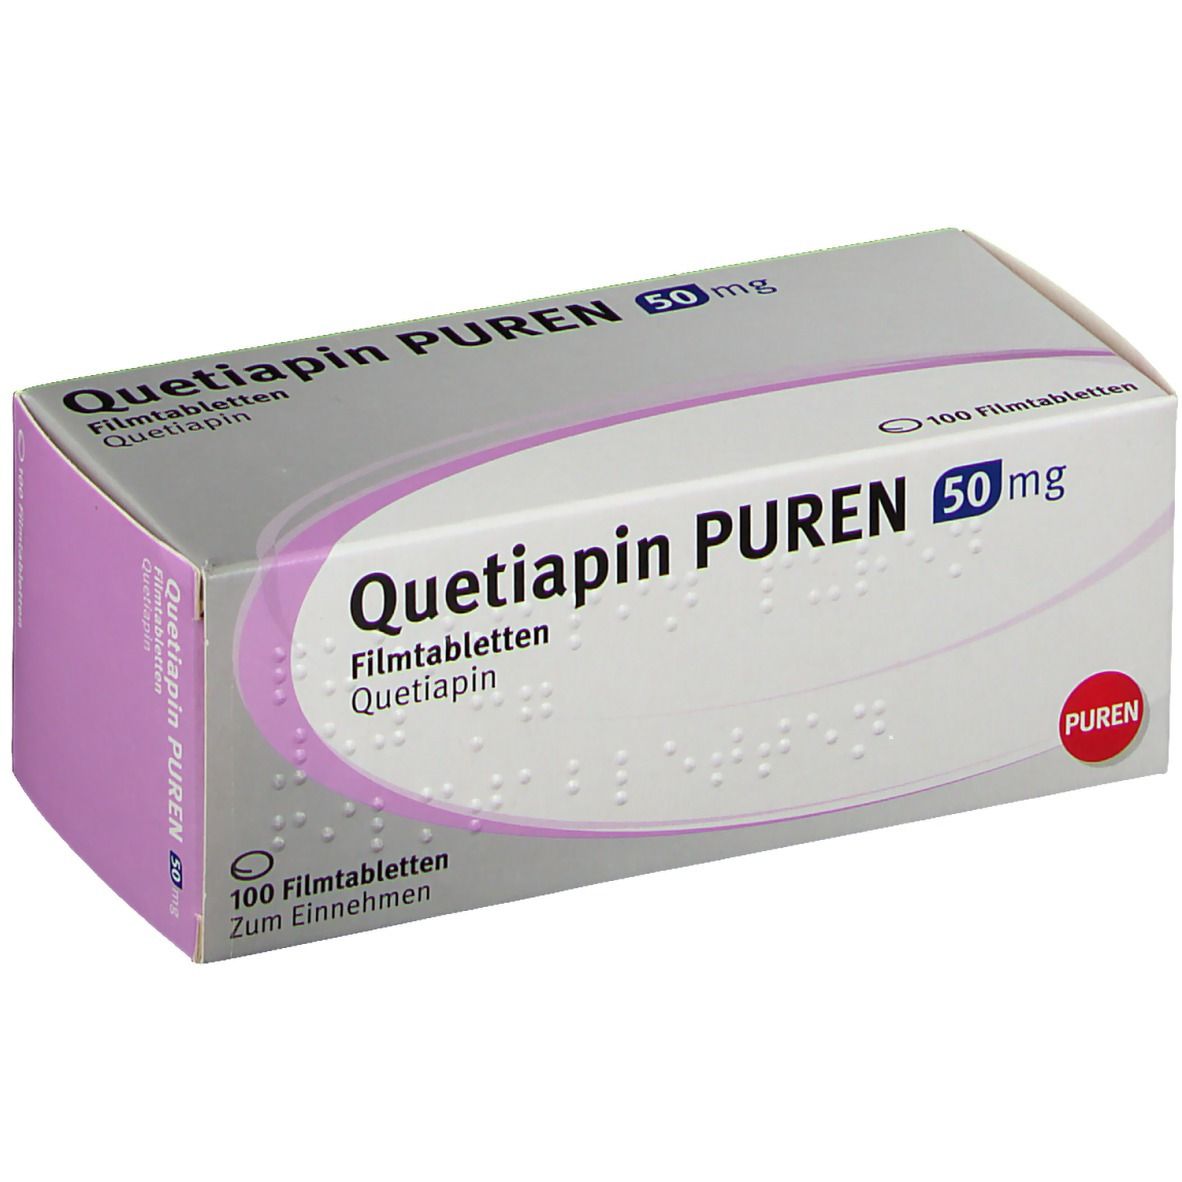 Quetiapin PUREN 50 mg